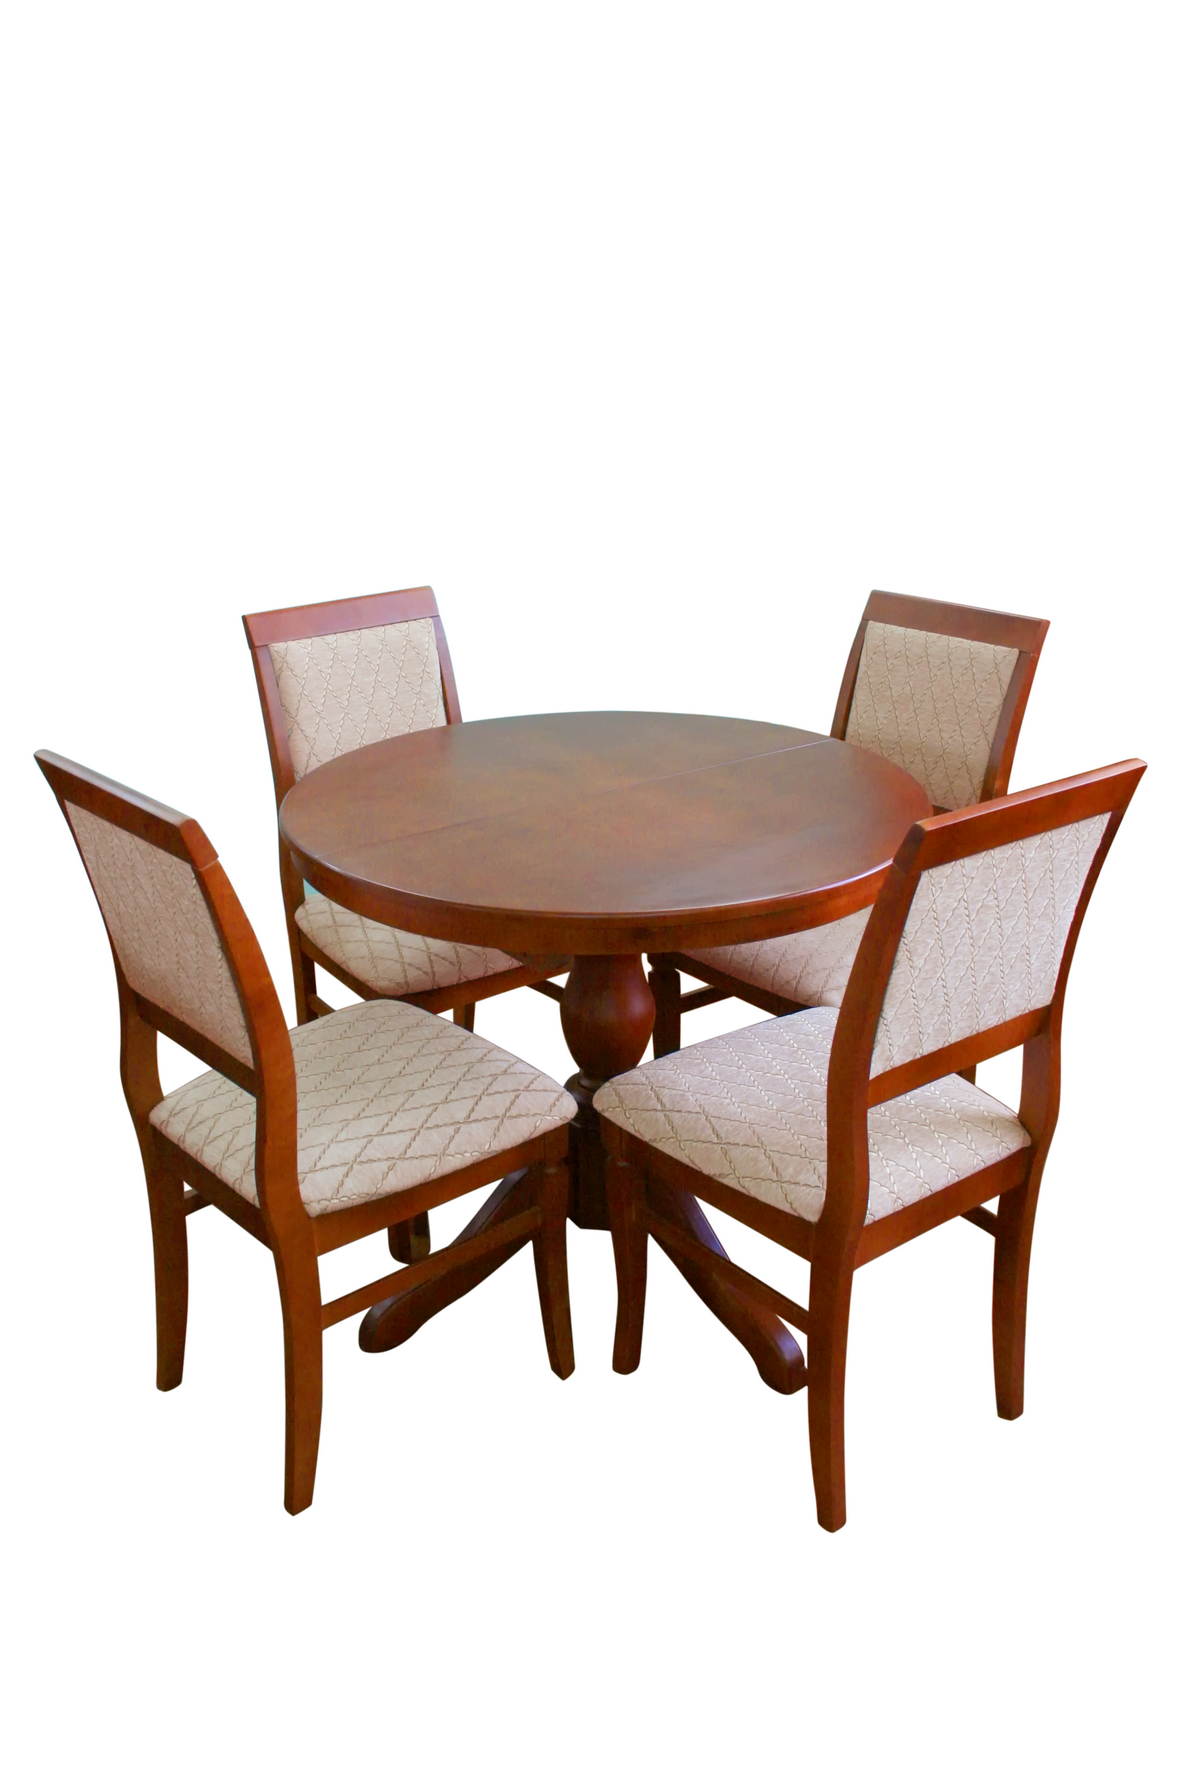 Продажа столов и стульев. Стол обеденный Браво массив фабрика. Стол HNDT-4872 SWC (MK-1105-HG) темный орех. Стулья из массива Браво мебель. Браво мебель столы обеденные.